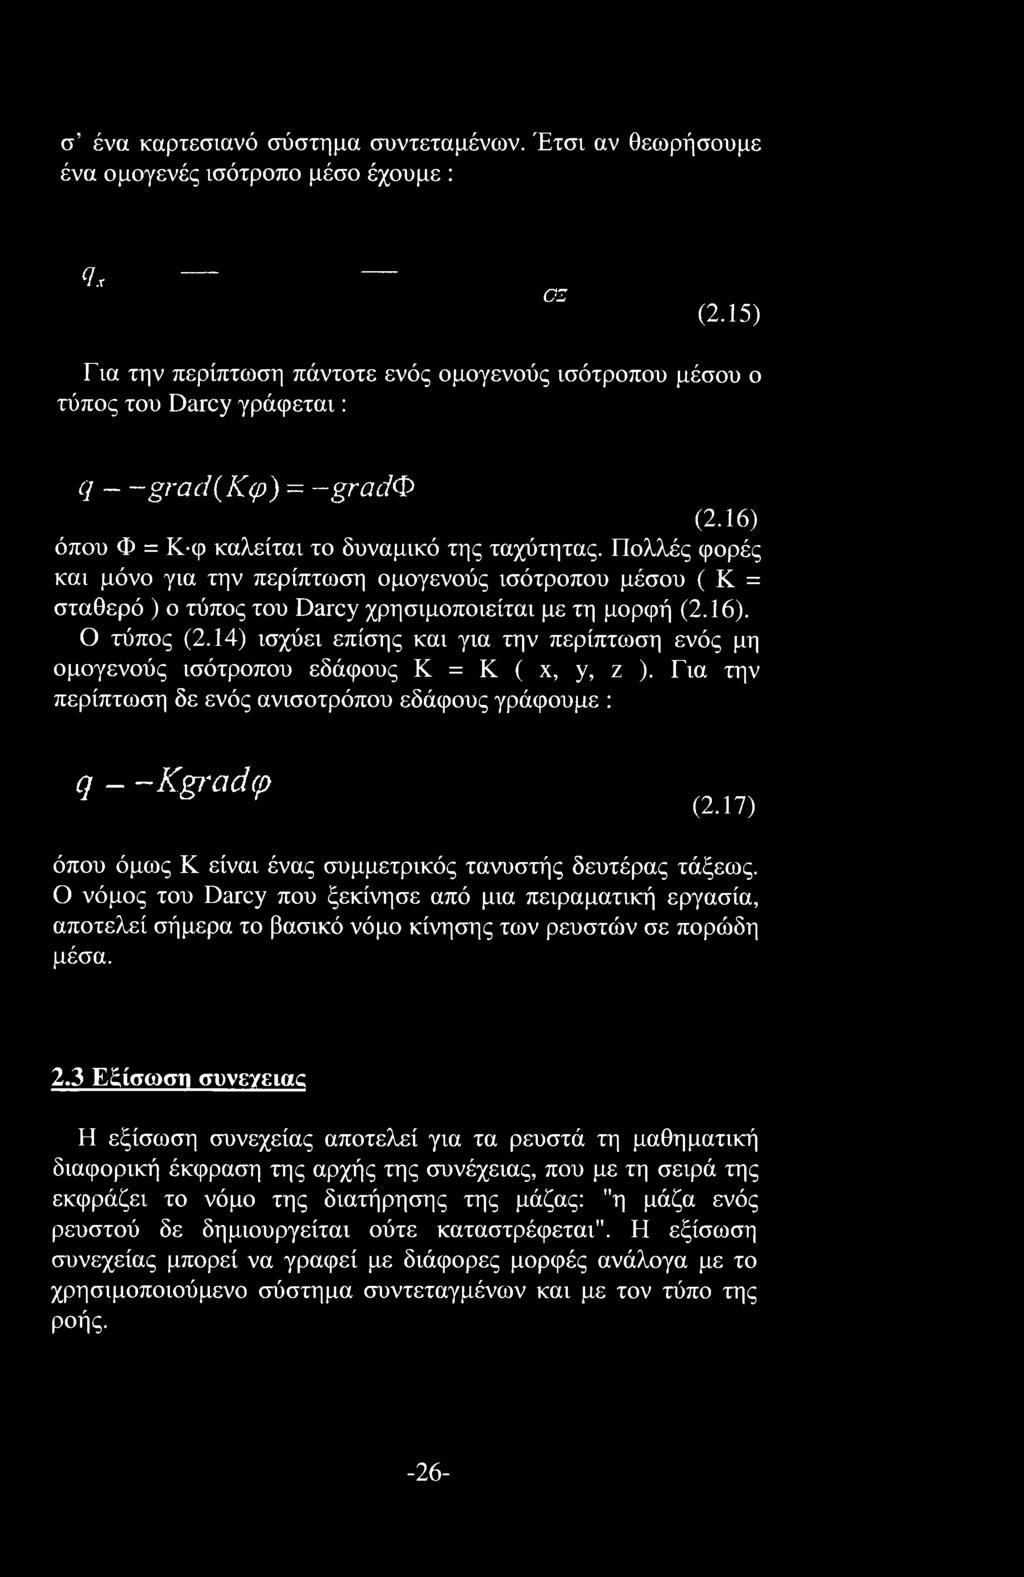 Πολλές φορές και μόνο για την περίπτωση ομογενούς ισότροπου μέσου ( Κ = σταθερό ) ο τύπος του Darcy χρησιμοποιείται με τη μορφή (2.16). Ο τύπος (2.